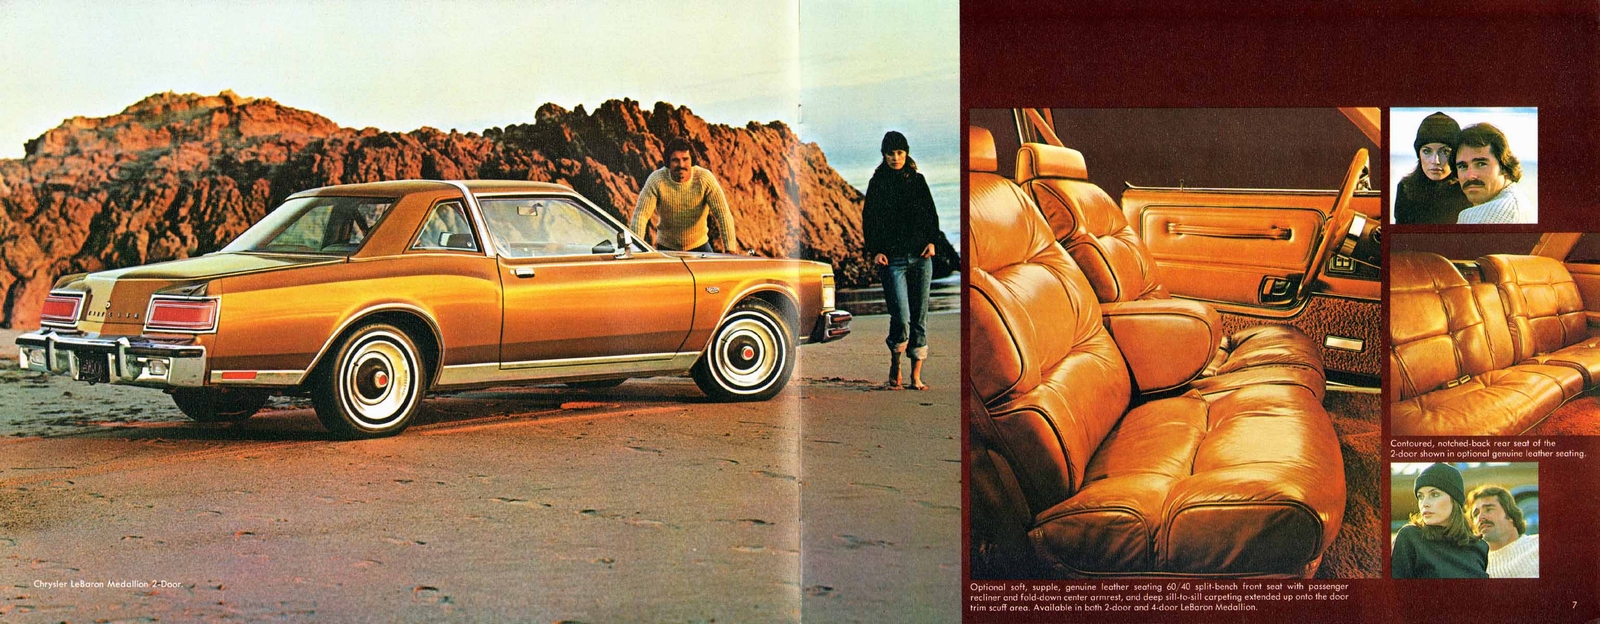 n_1978 Chrysler LeBaron-06-07.jpg